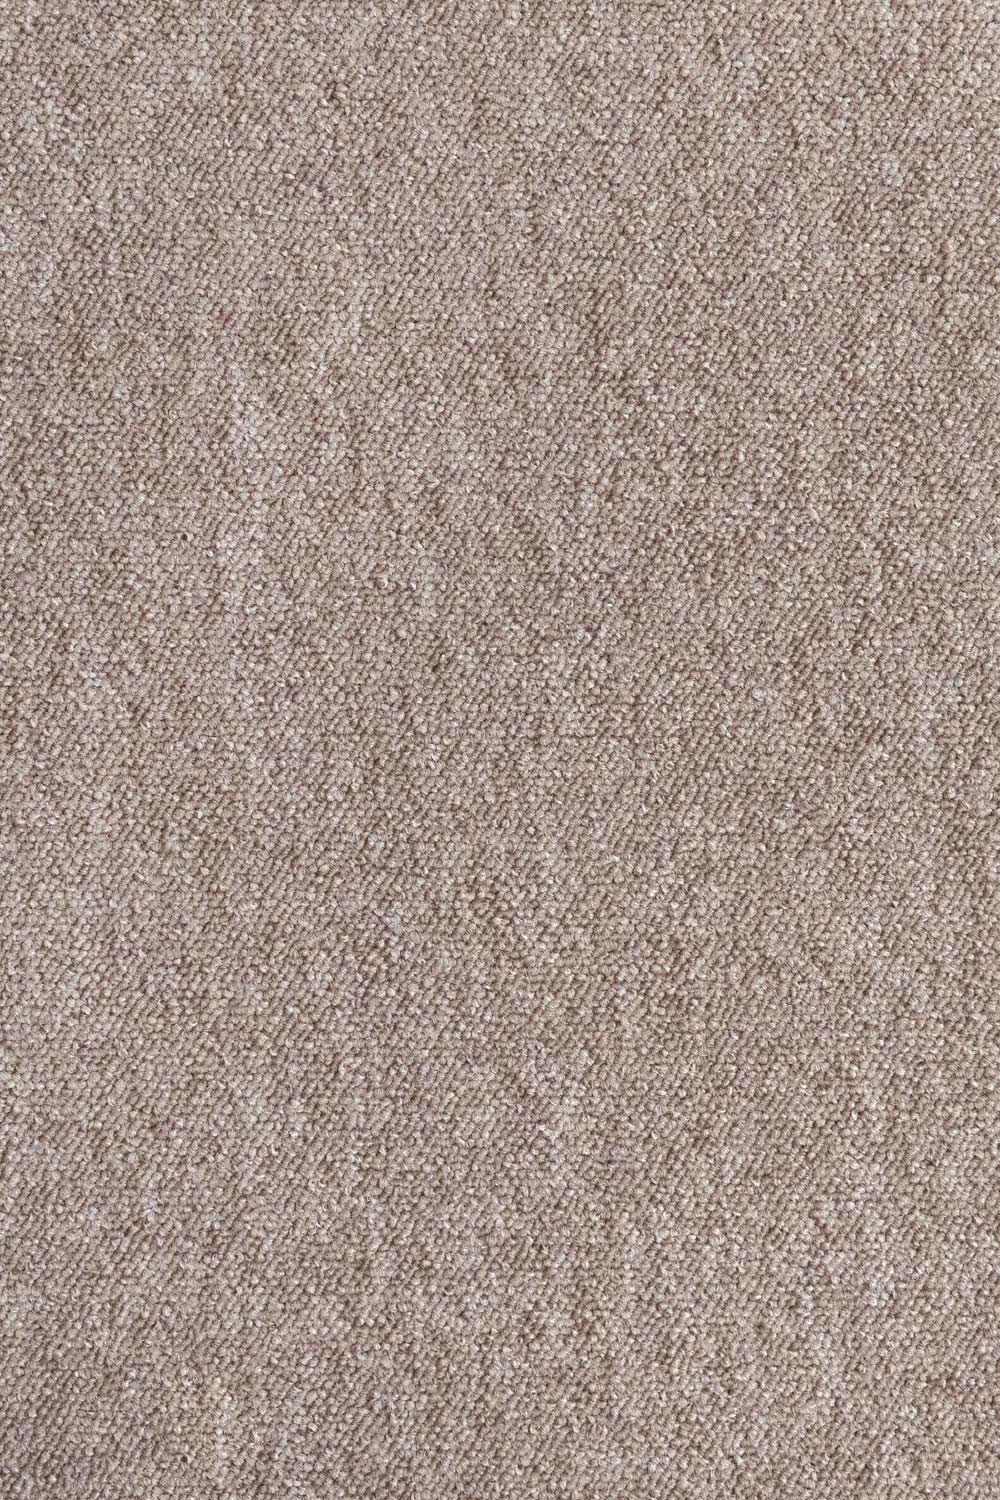 Metrážový koberec Lyon Solid 70 400 cm